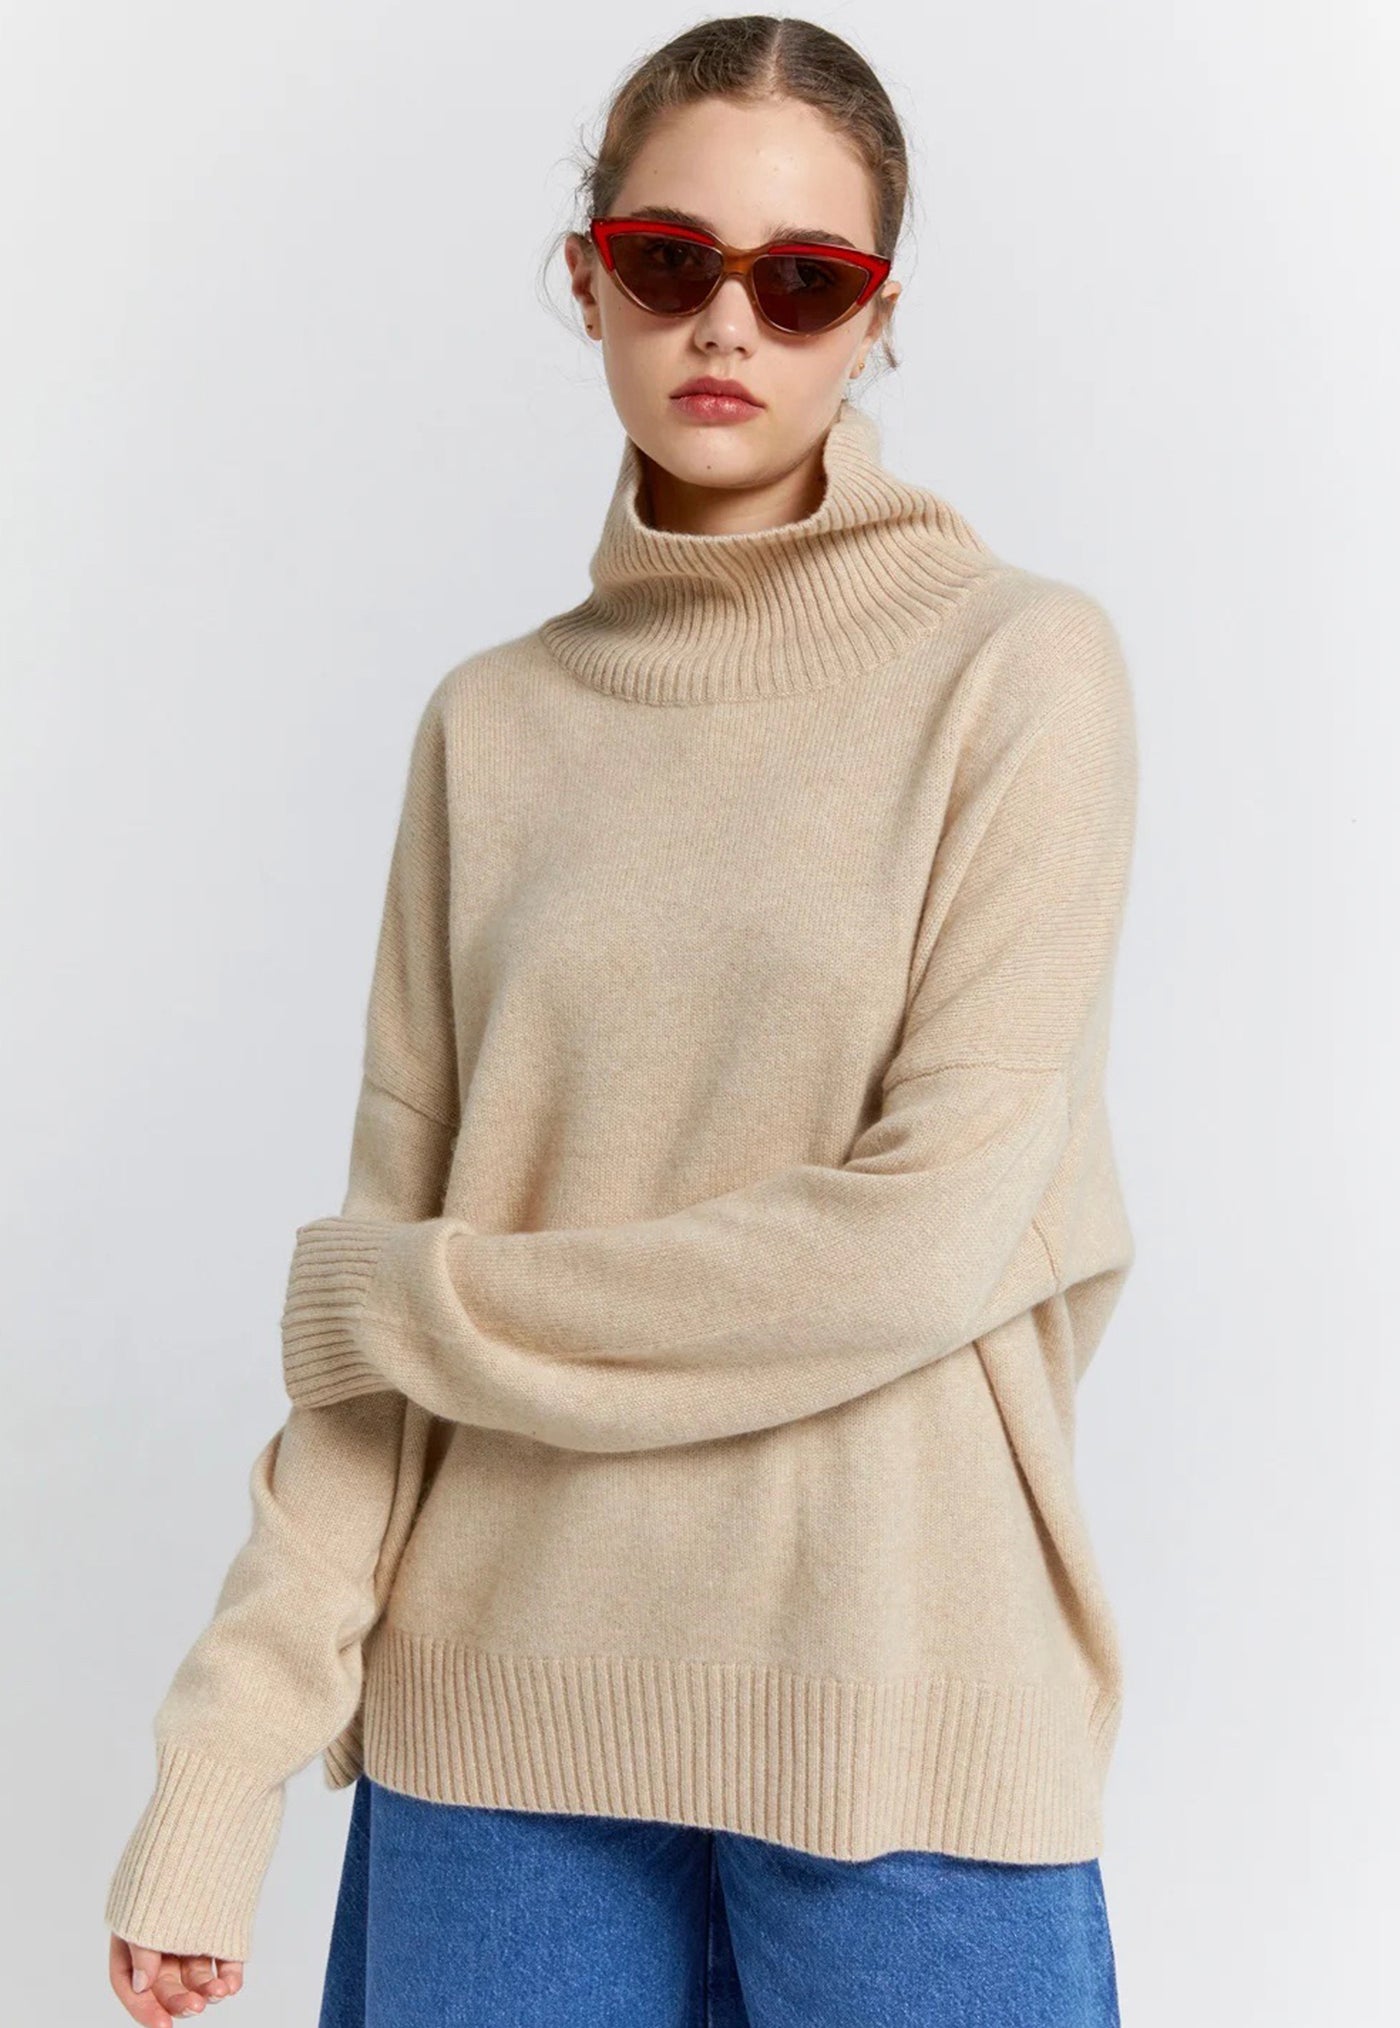 Carmen Turtleneck Sweater - Oat sold by Angel Divine